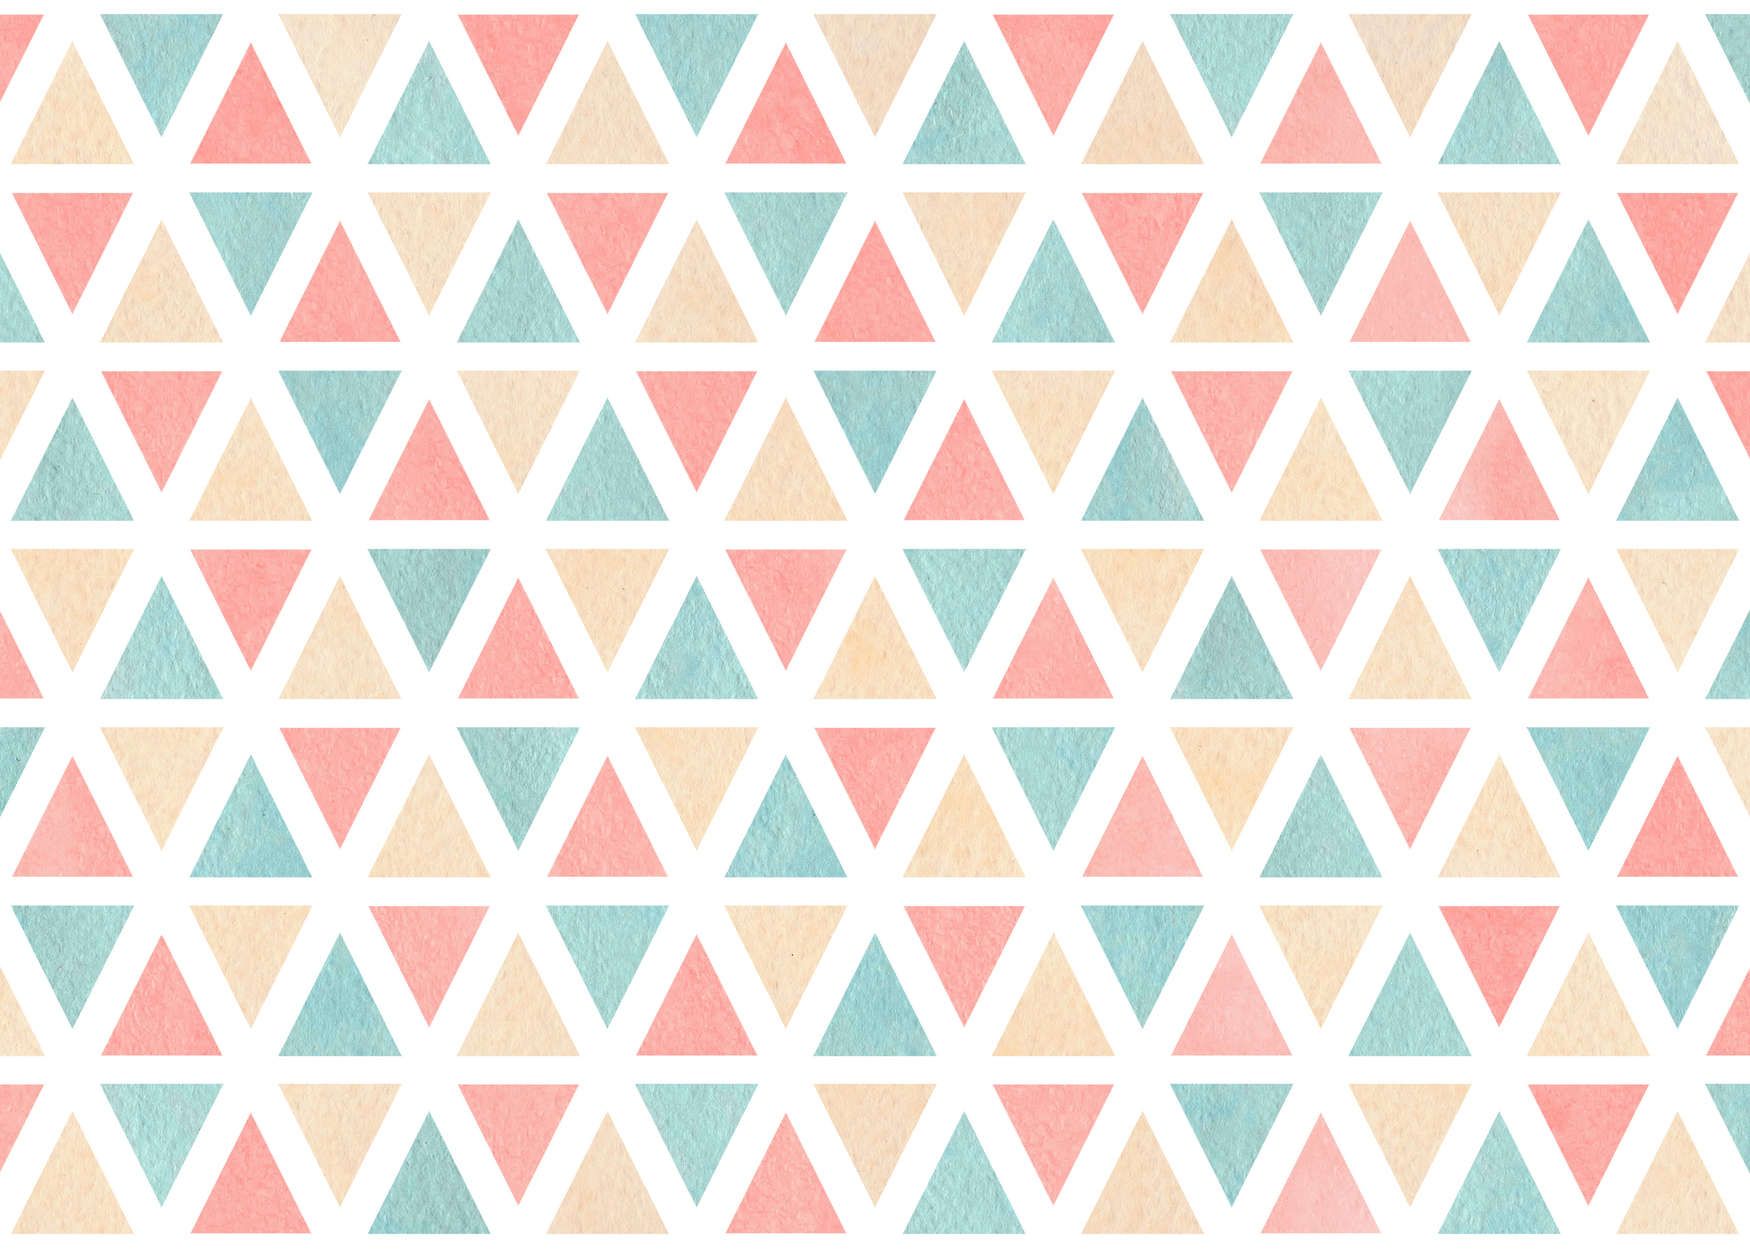             papier peint en papier graphique avec triangles colorés - intissé lisse & légèrement brillant
        